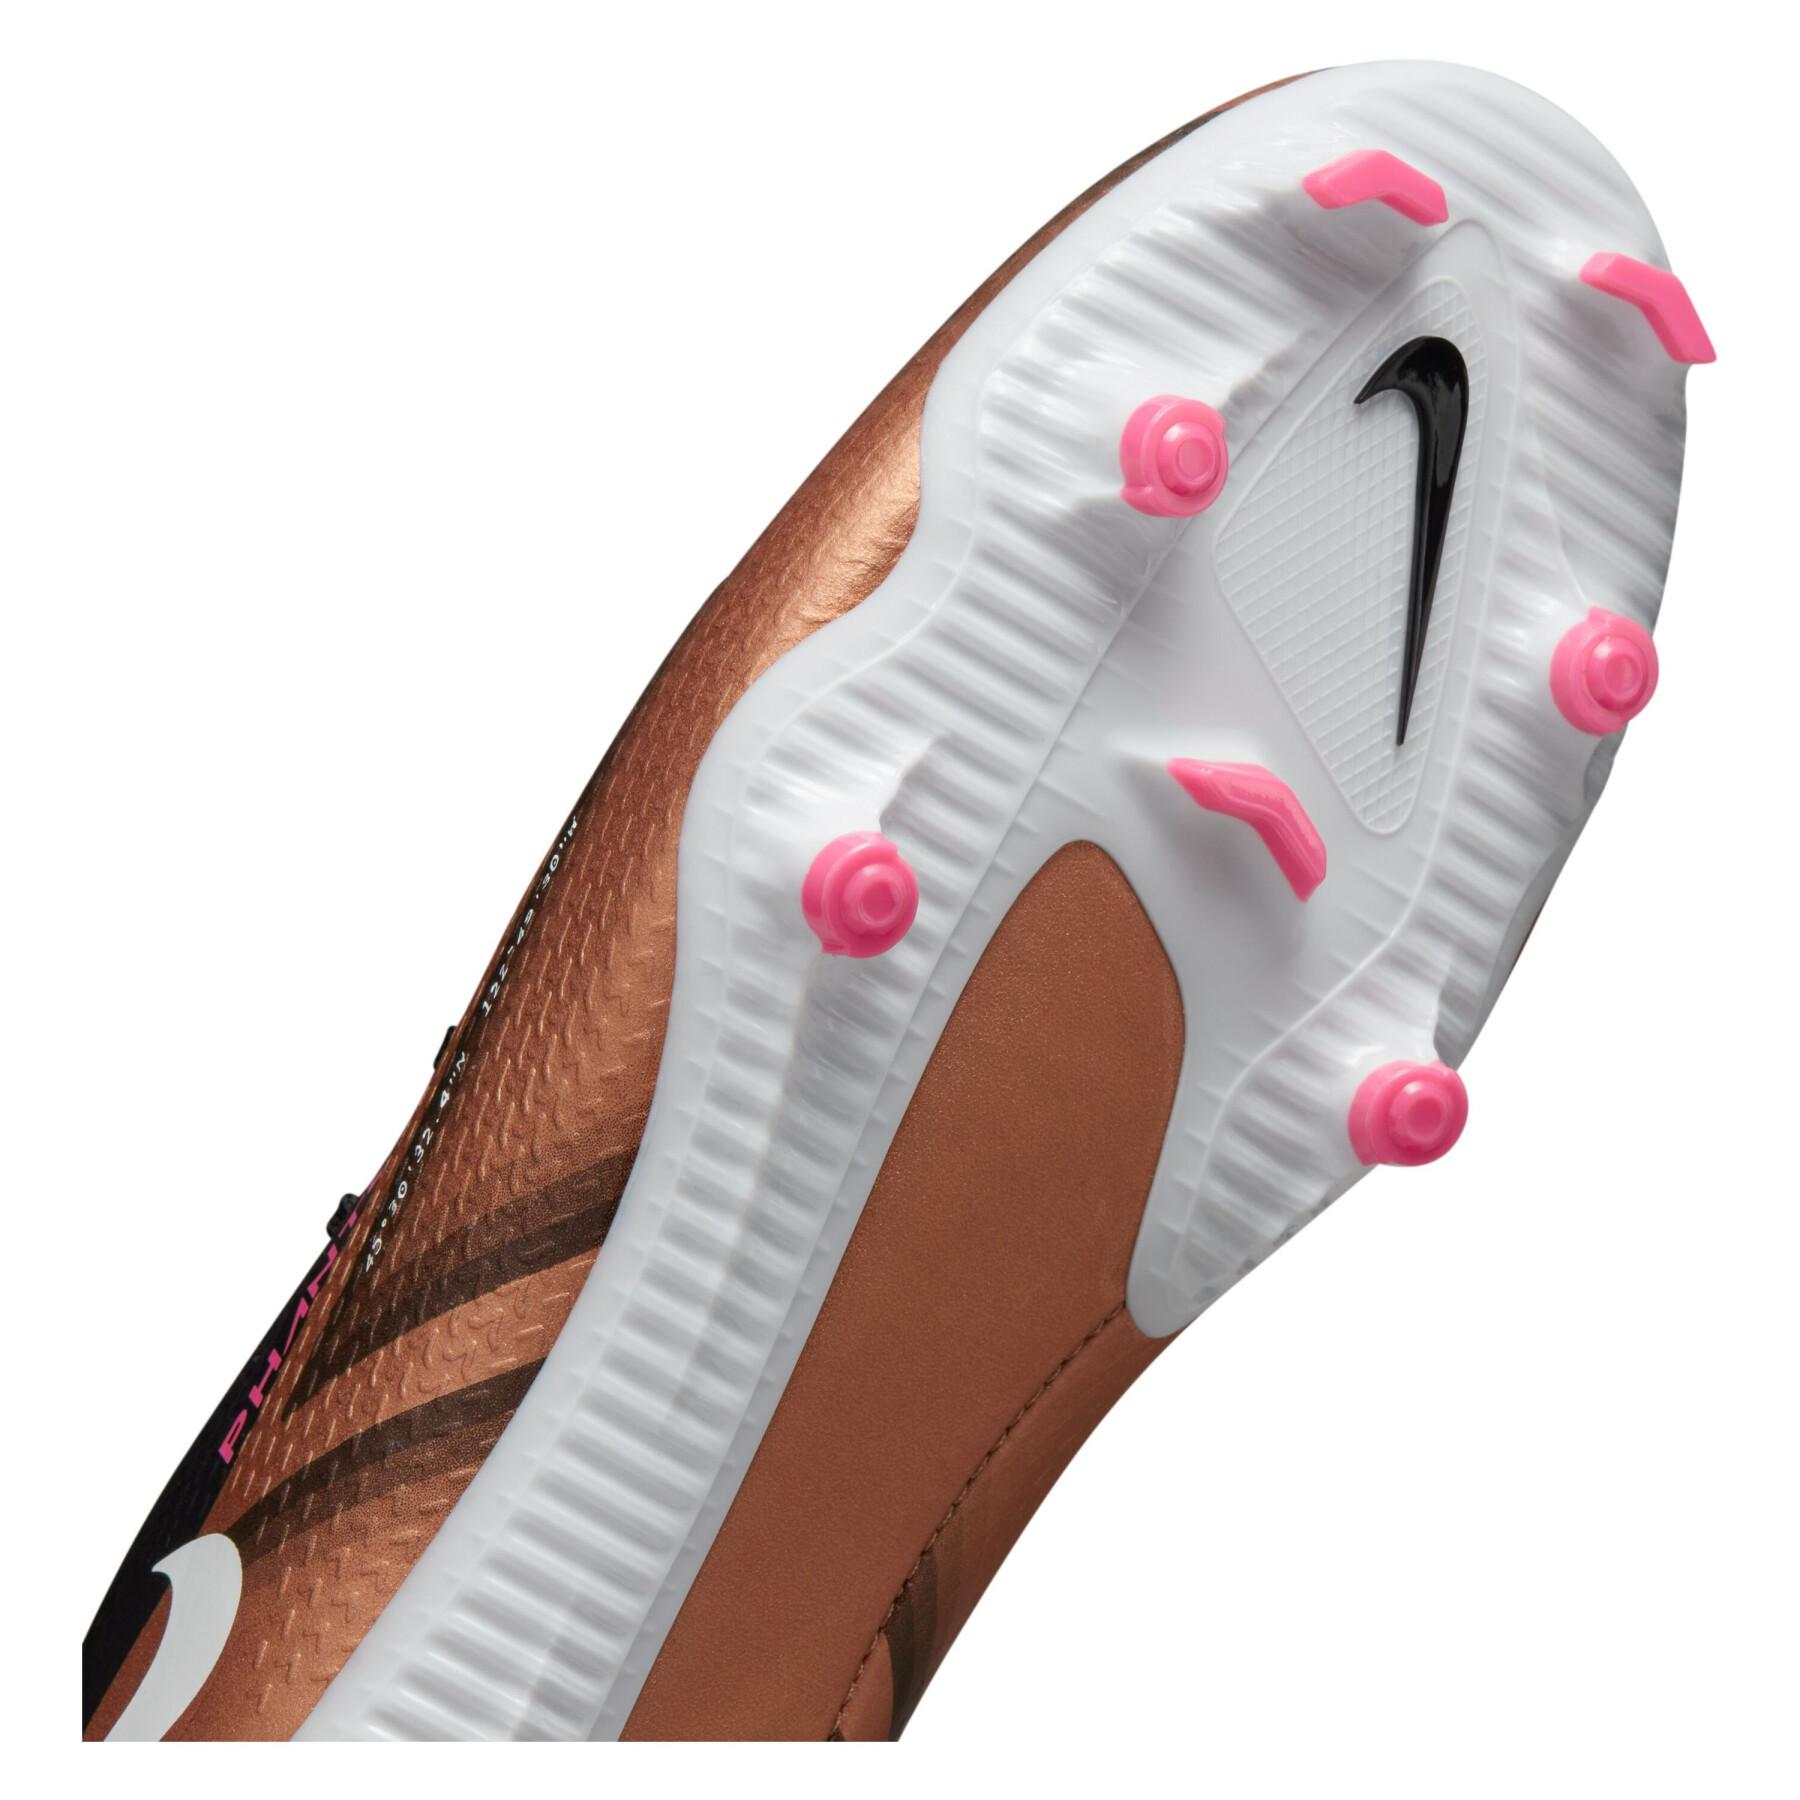 Sapatos de futebol Nike Phantom GT2 Academy Qatar Dynamic Fit FG/MG - Generation Pack